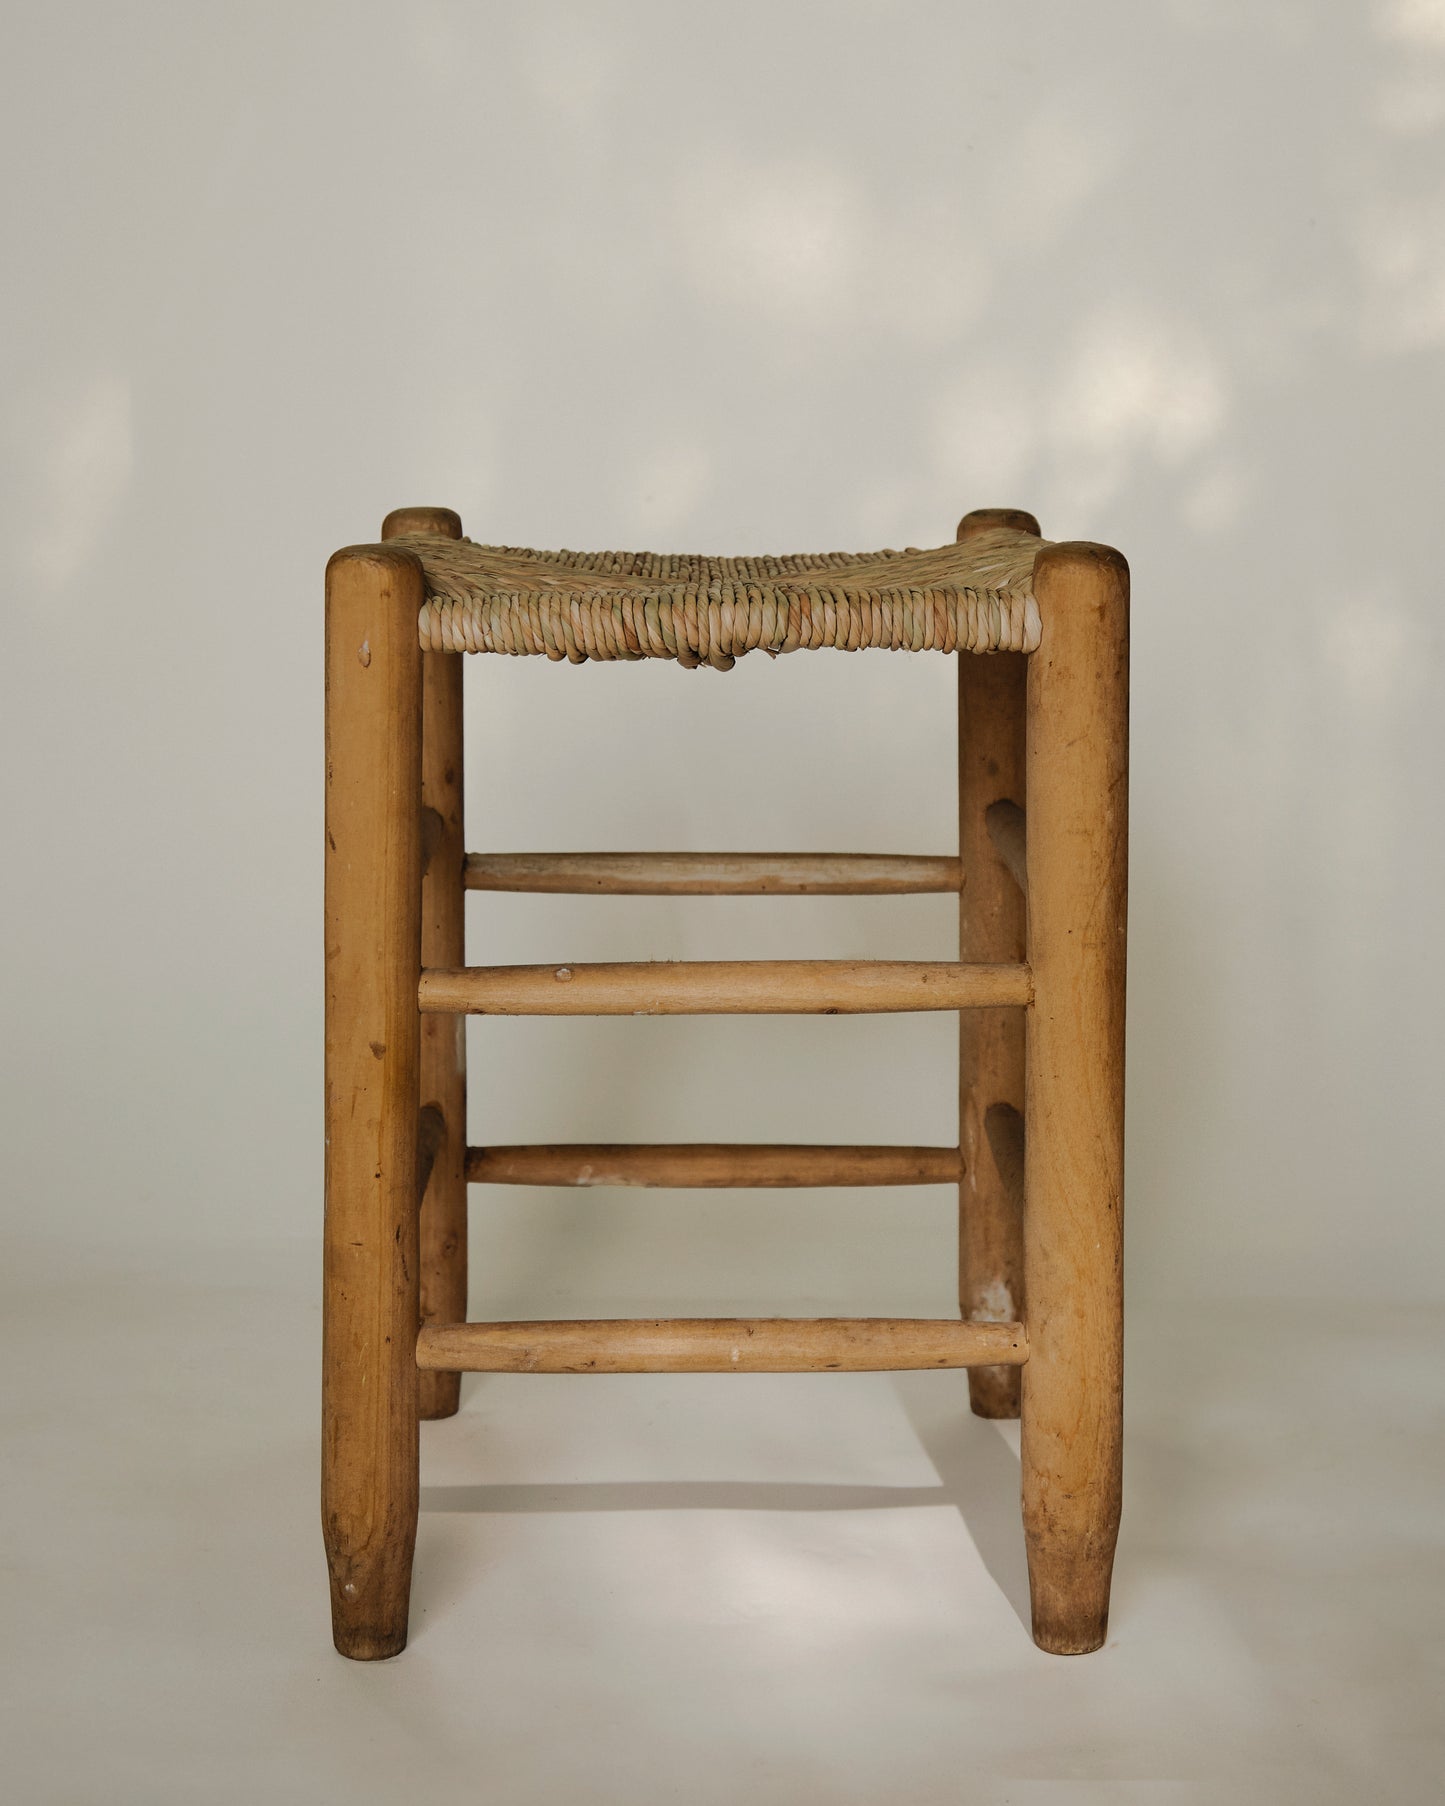 cattail stool